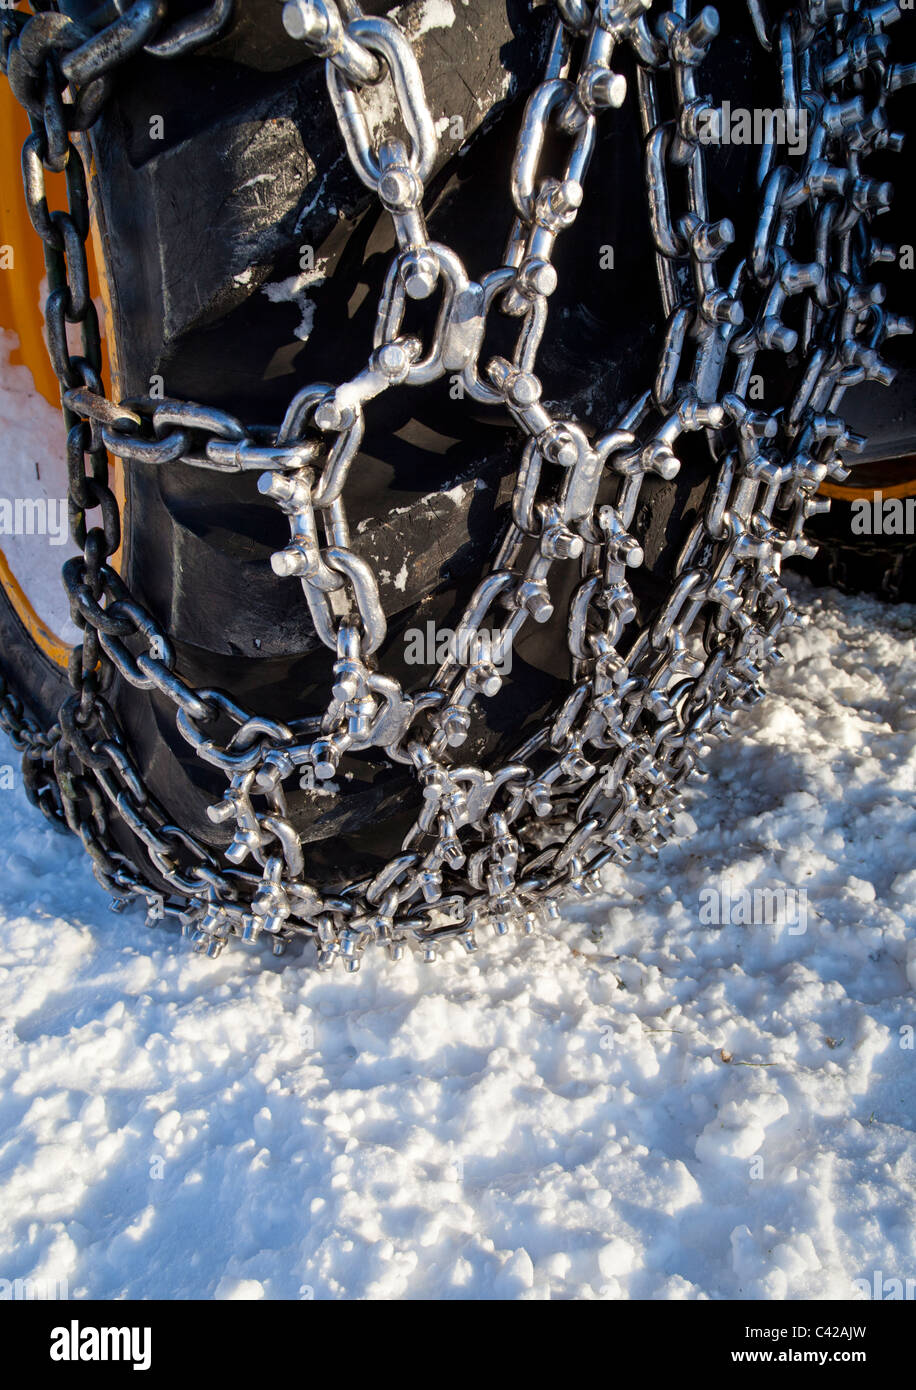 Nuevas cadenas de nieve de punta brillante adheridas a un neumático para cosechadoras forestales, Finlandia Foto de stock